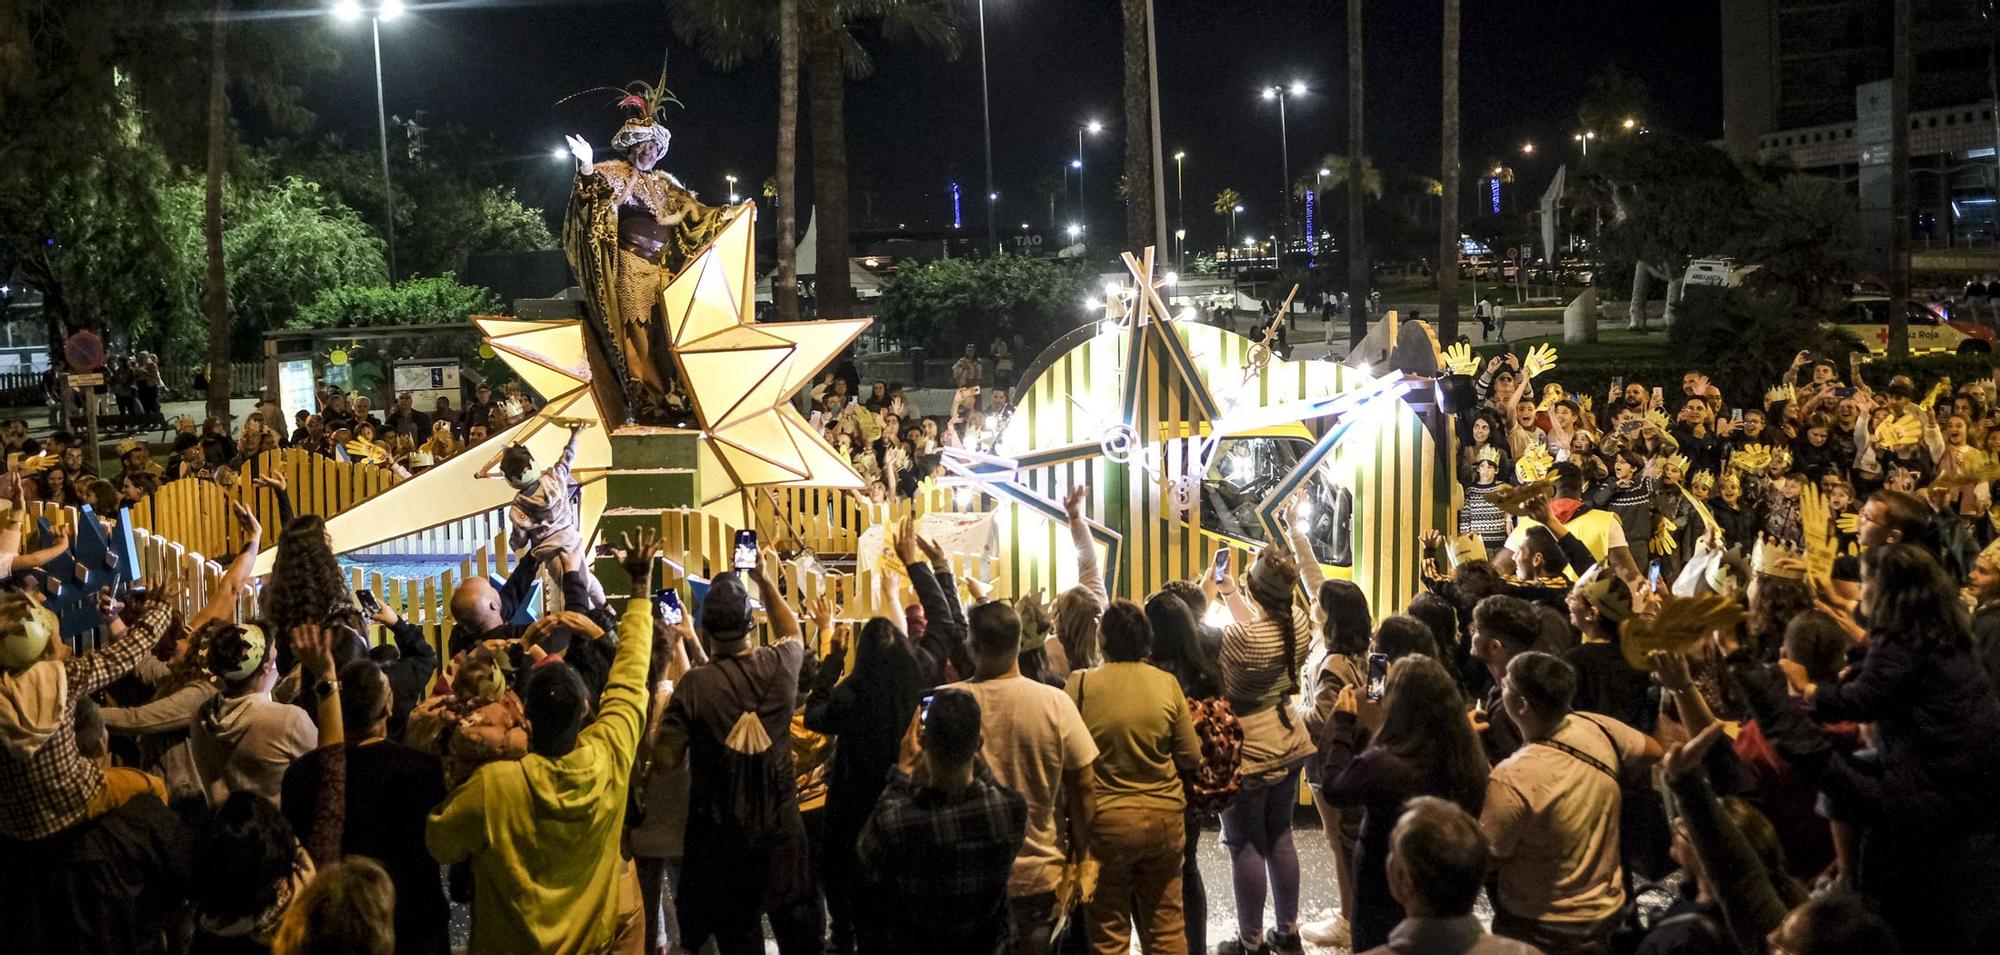 Municipio de Carolina - Fiesta de Reyes y entrega de Regalos